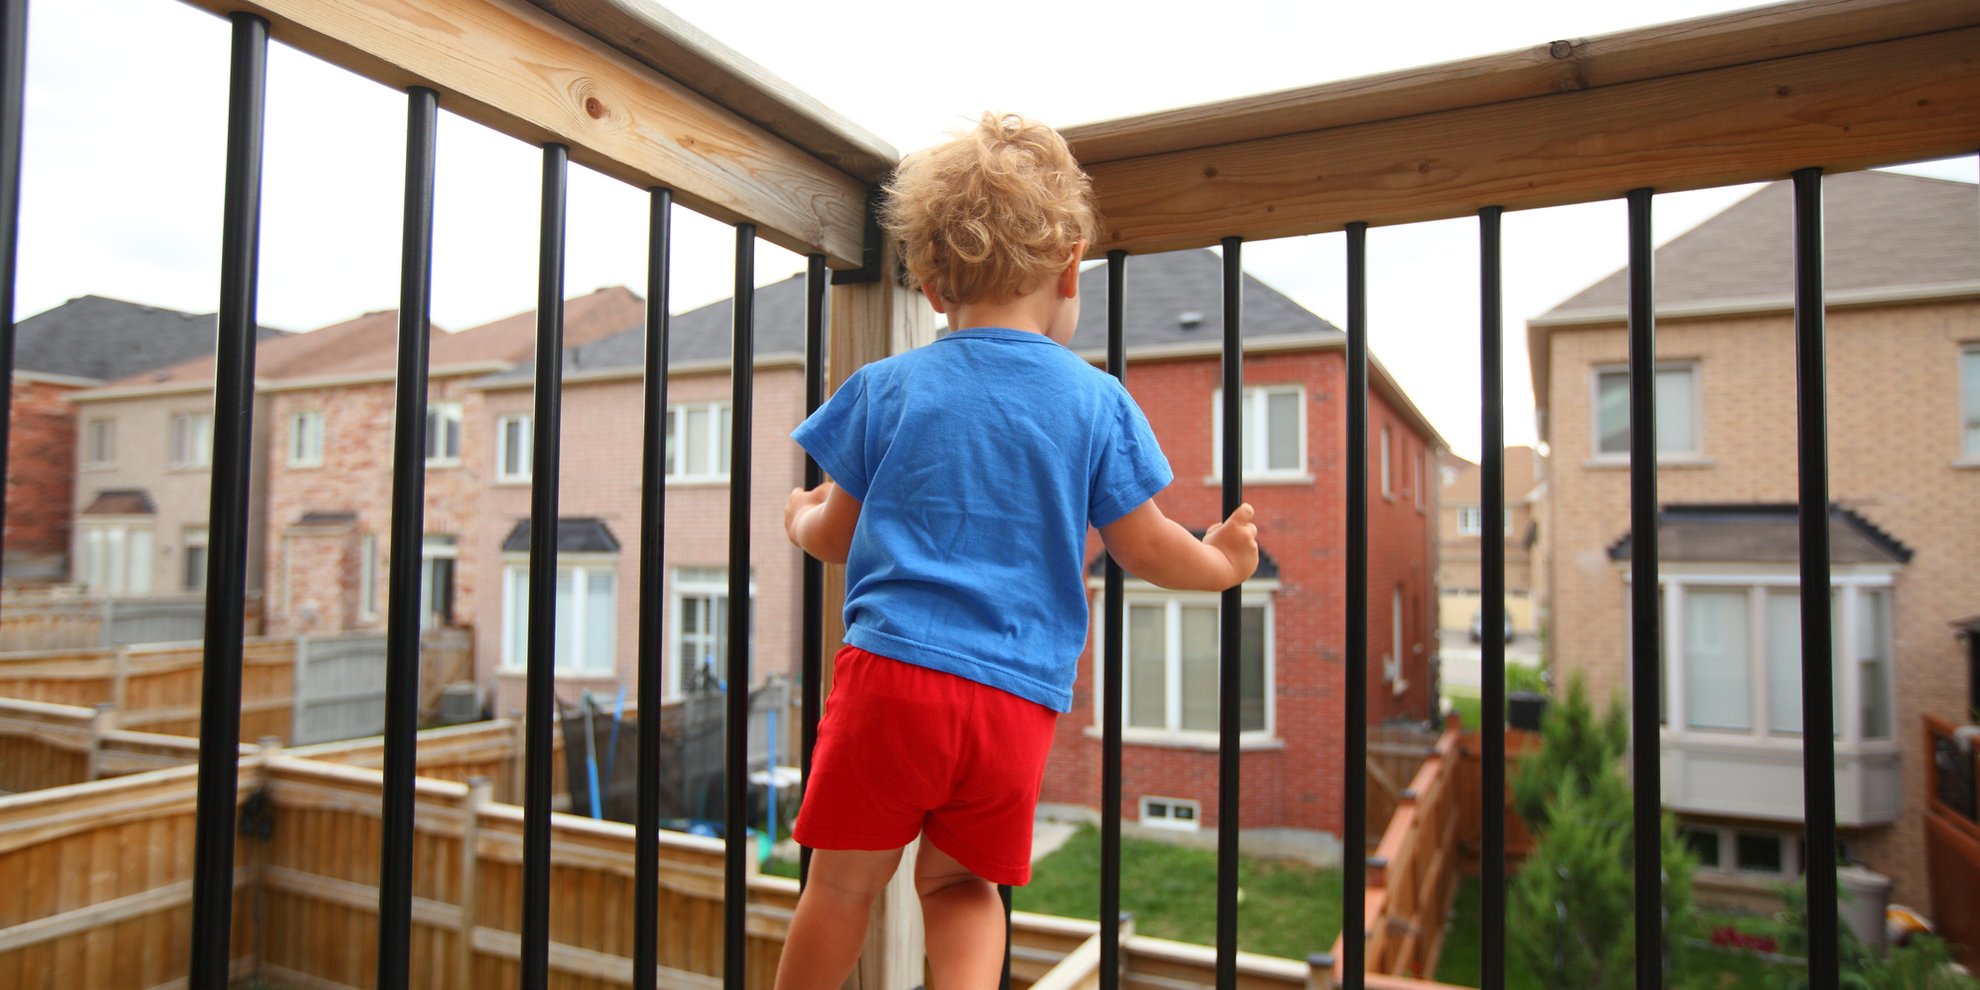 Balkon kindersicher machen: Mit diesen Tipps geht's ganz einfach